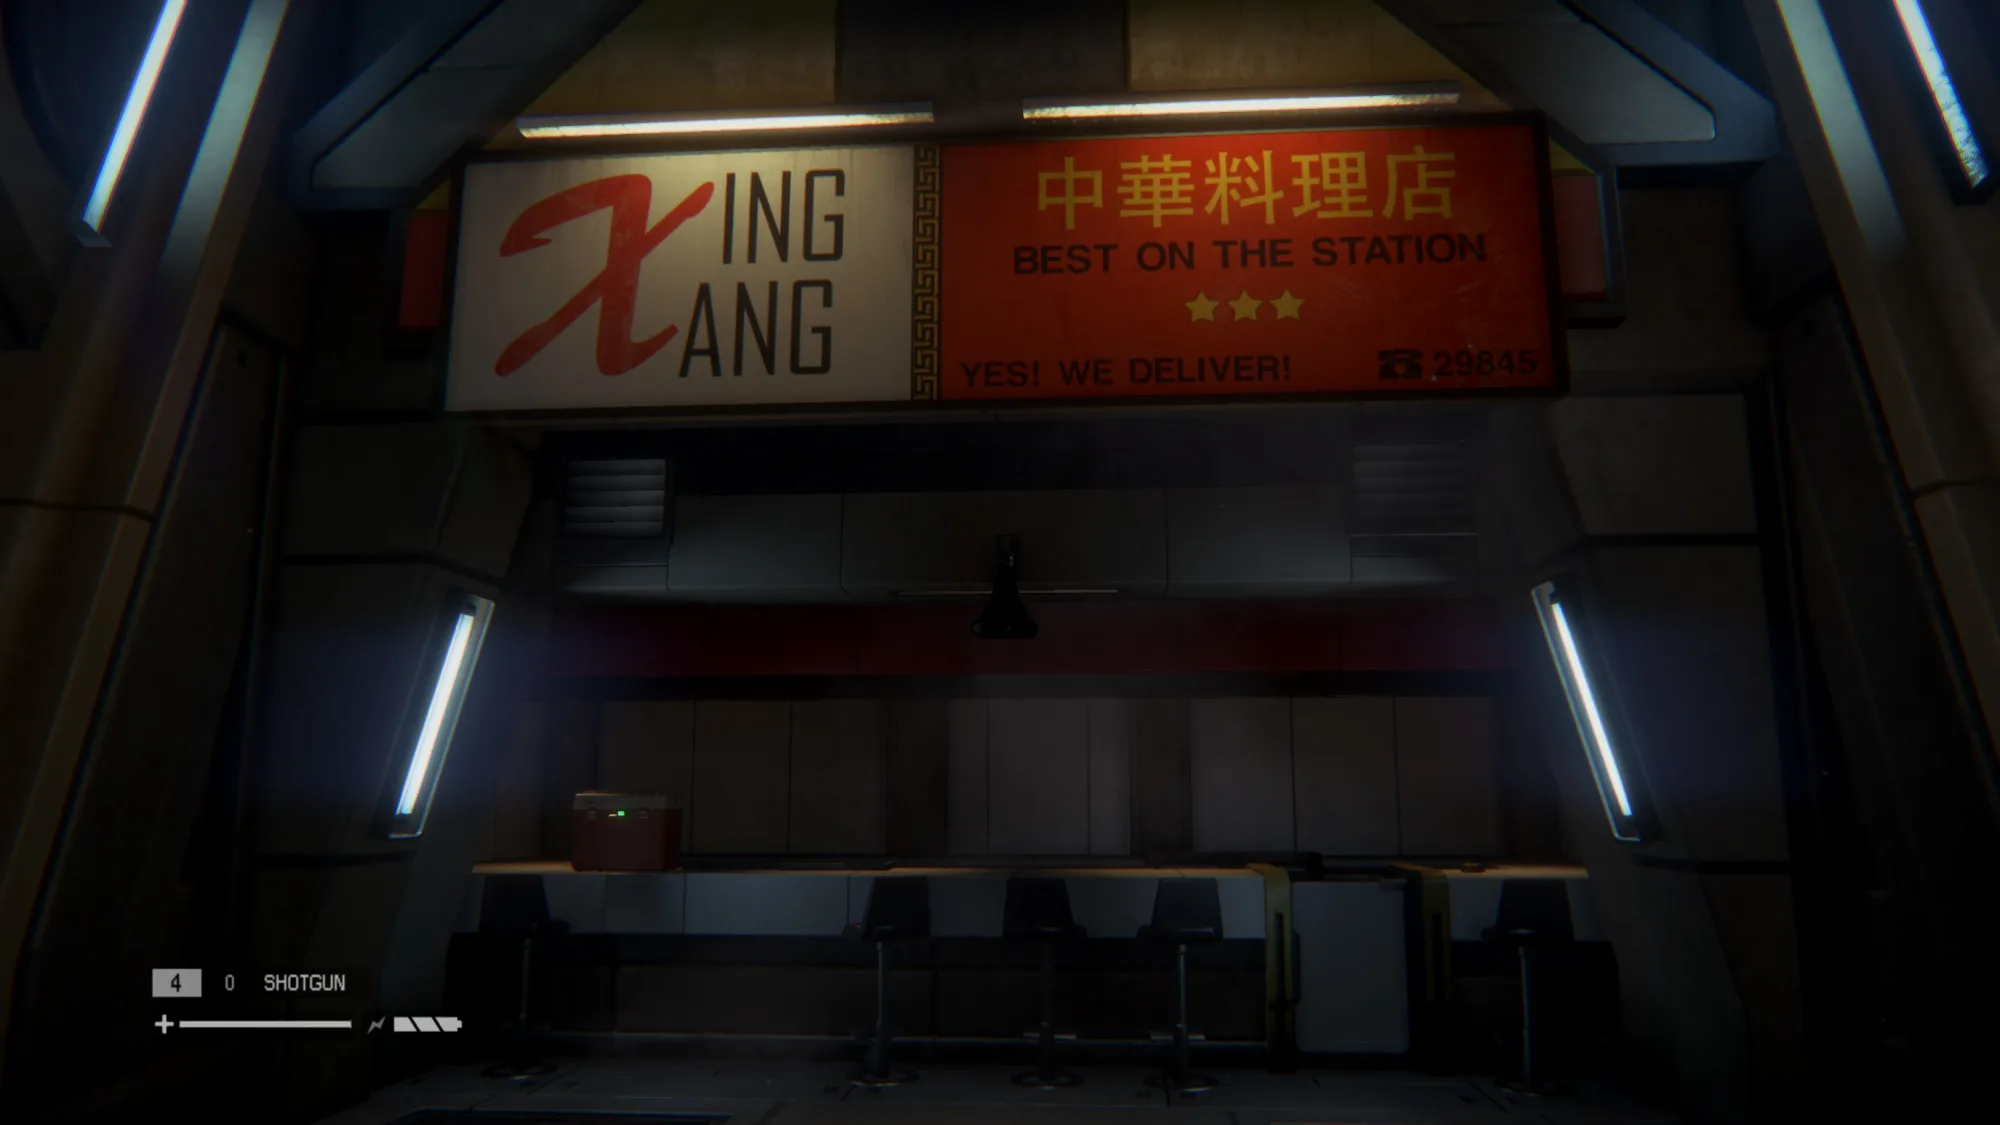 号称站内最棒的中华料理店“Xing Xang”，咱姑且叫新乡饭庄。似乎还是连锁，空港内也有一家。“是的，我们外送！”，塞瓦斯托波尔的大都会气质可见一斑，但不会有人再需要了